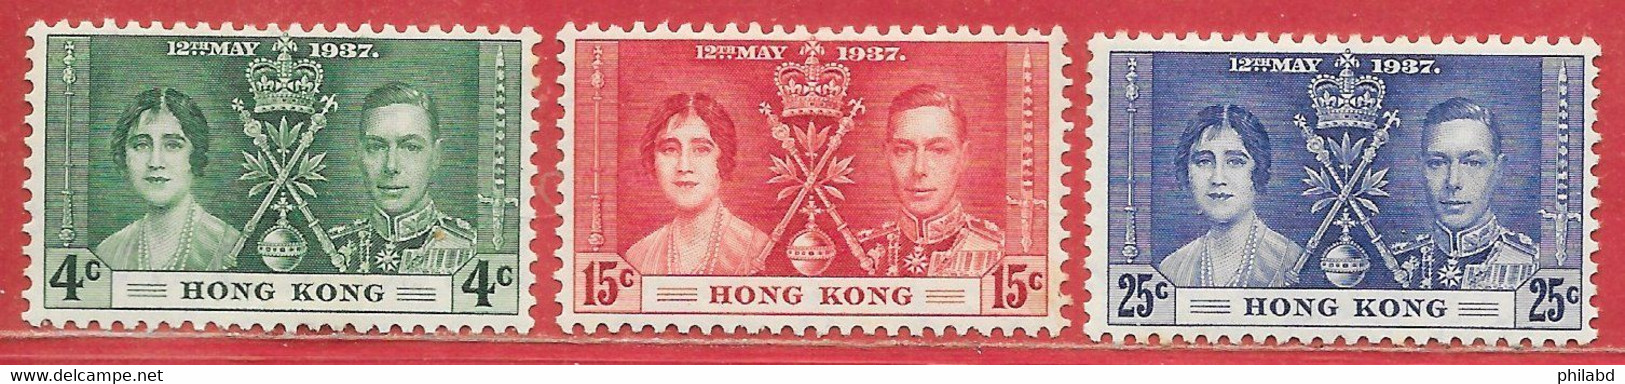 Hong Kong N°137 à/to 139 1937 * - Neufs